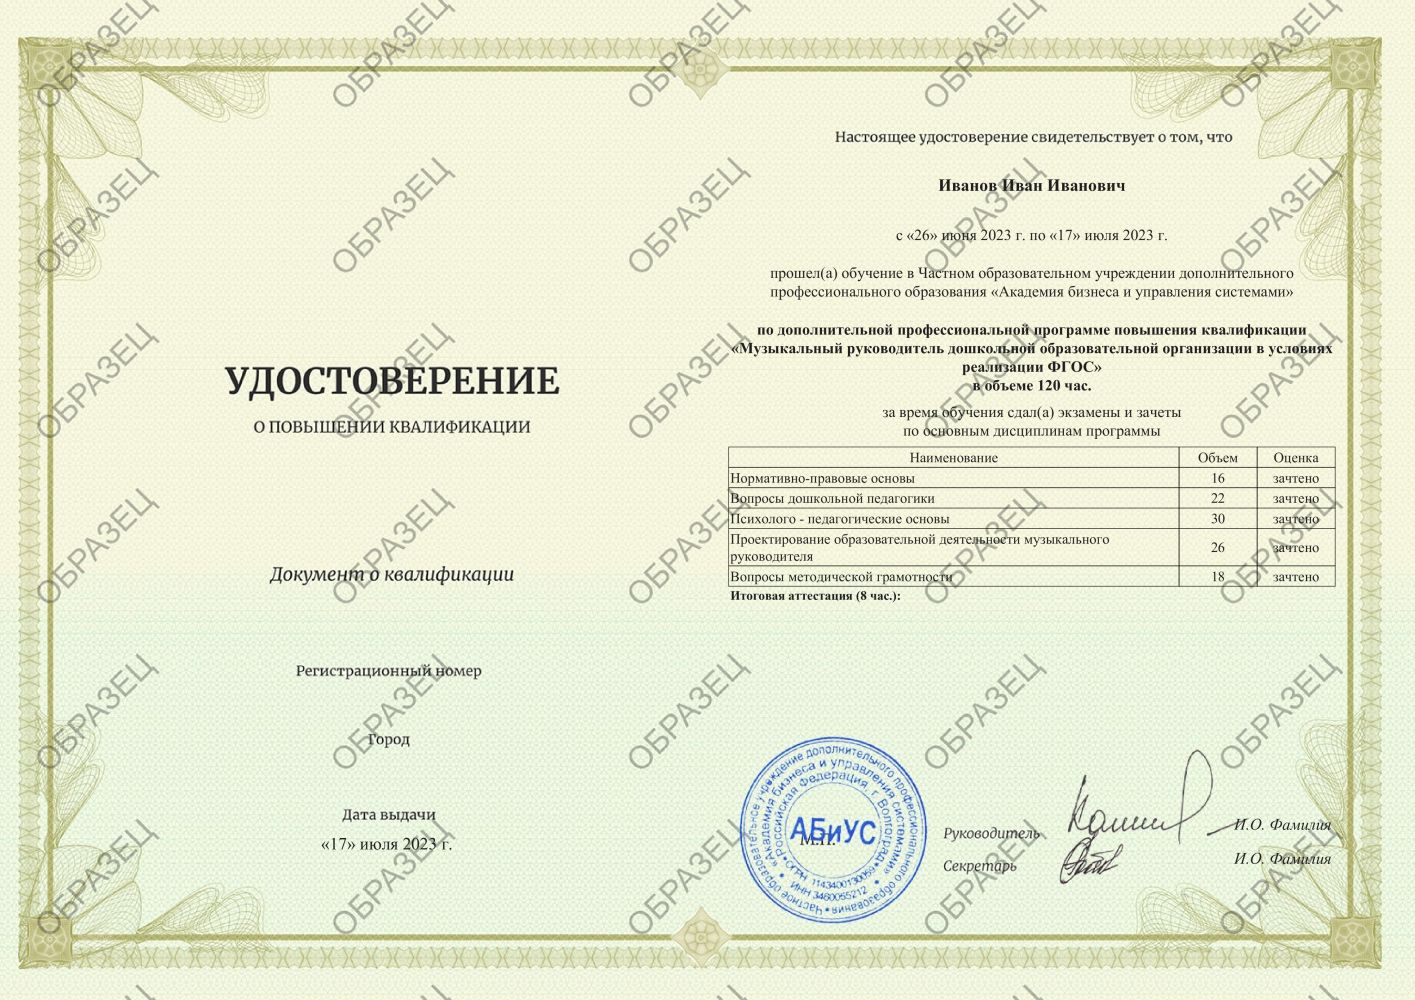 Удостоверение Музыкальный руководитель дошкольной образовательной организации в условиях реализации ФГОС 120 часов 4563 руб.